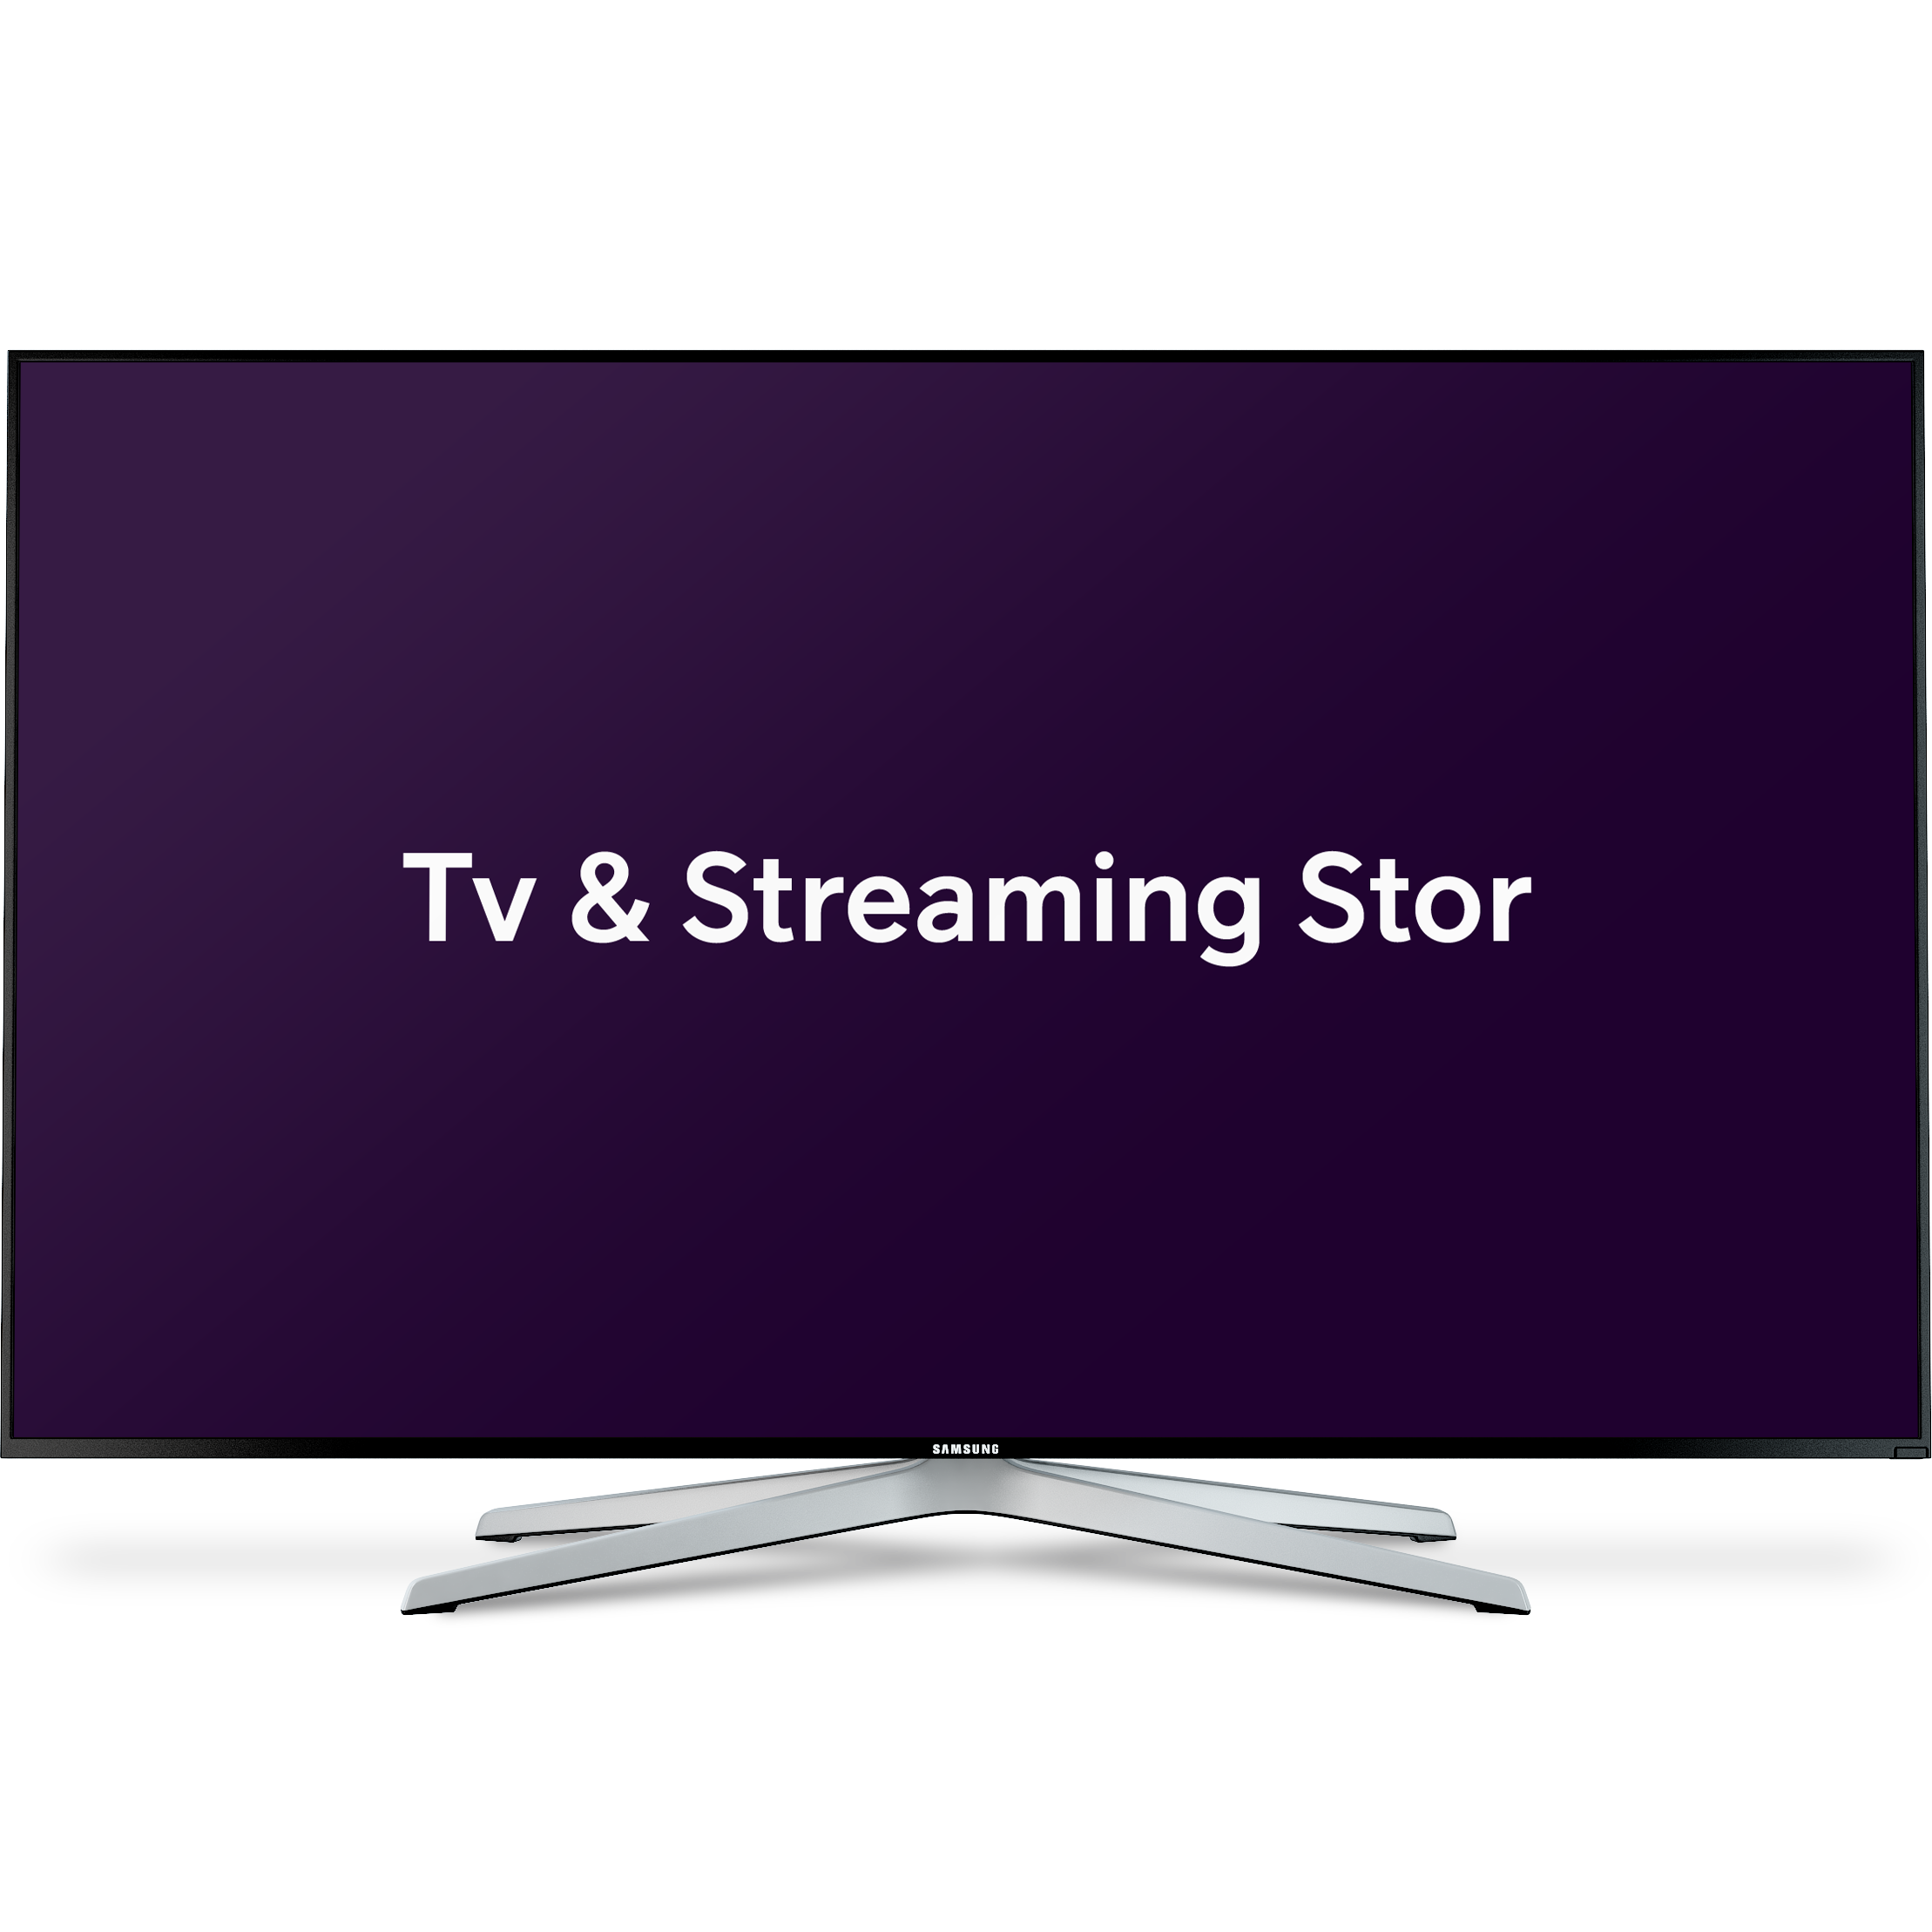 Tv & Streaming paket Stor